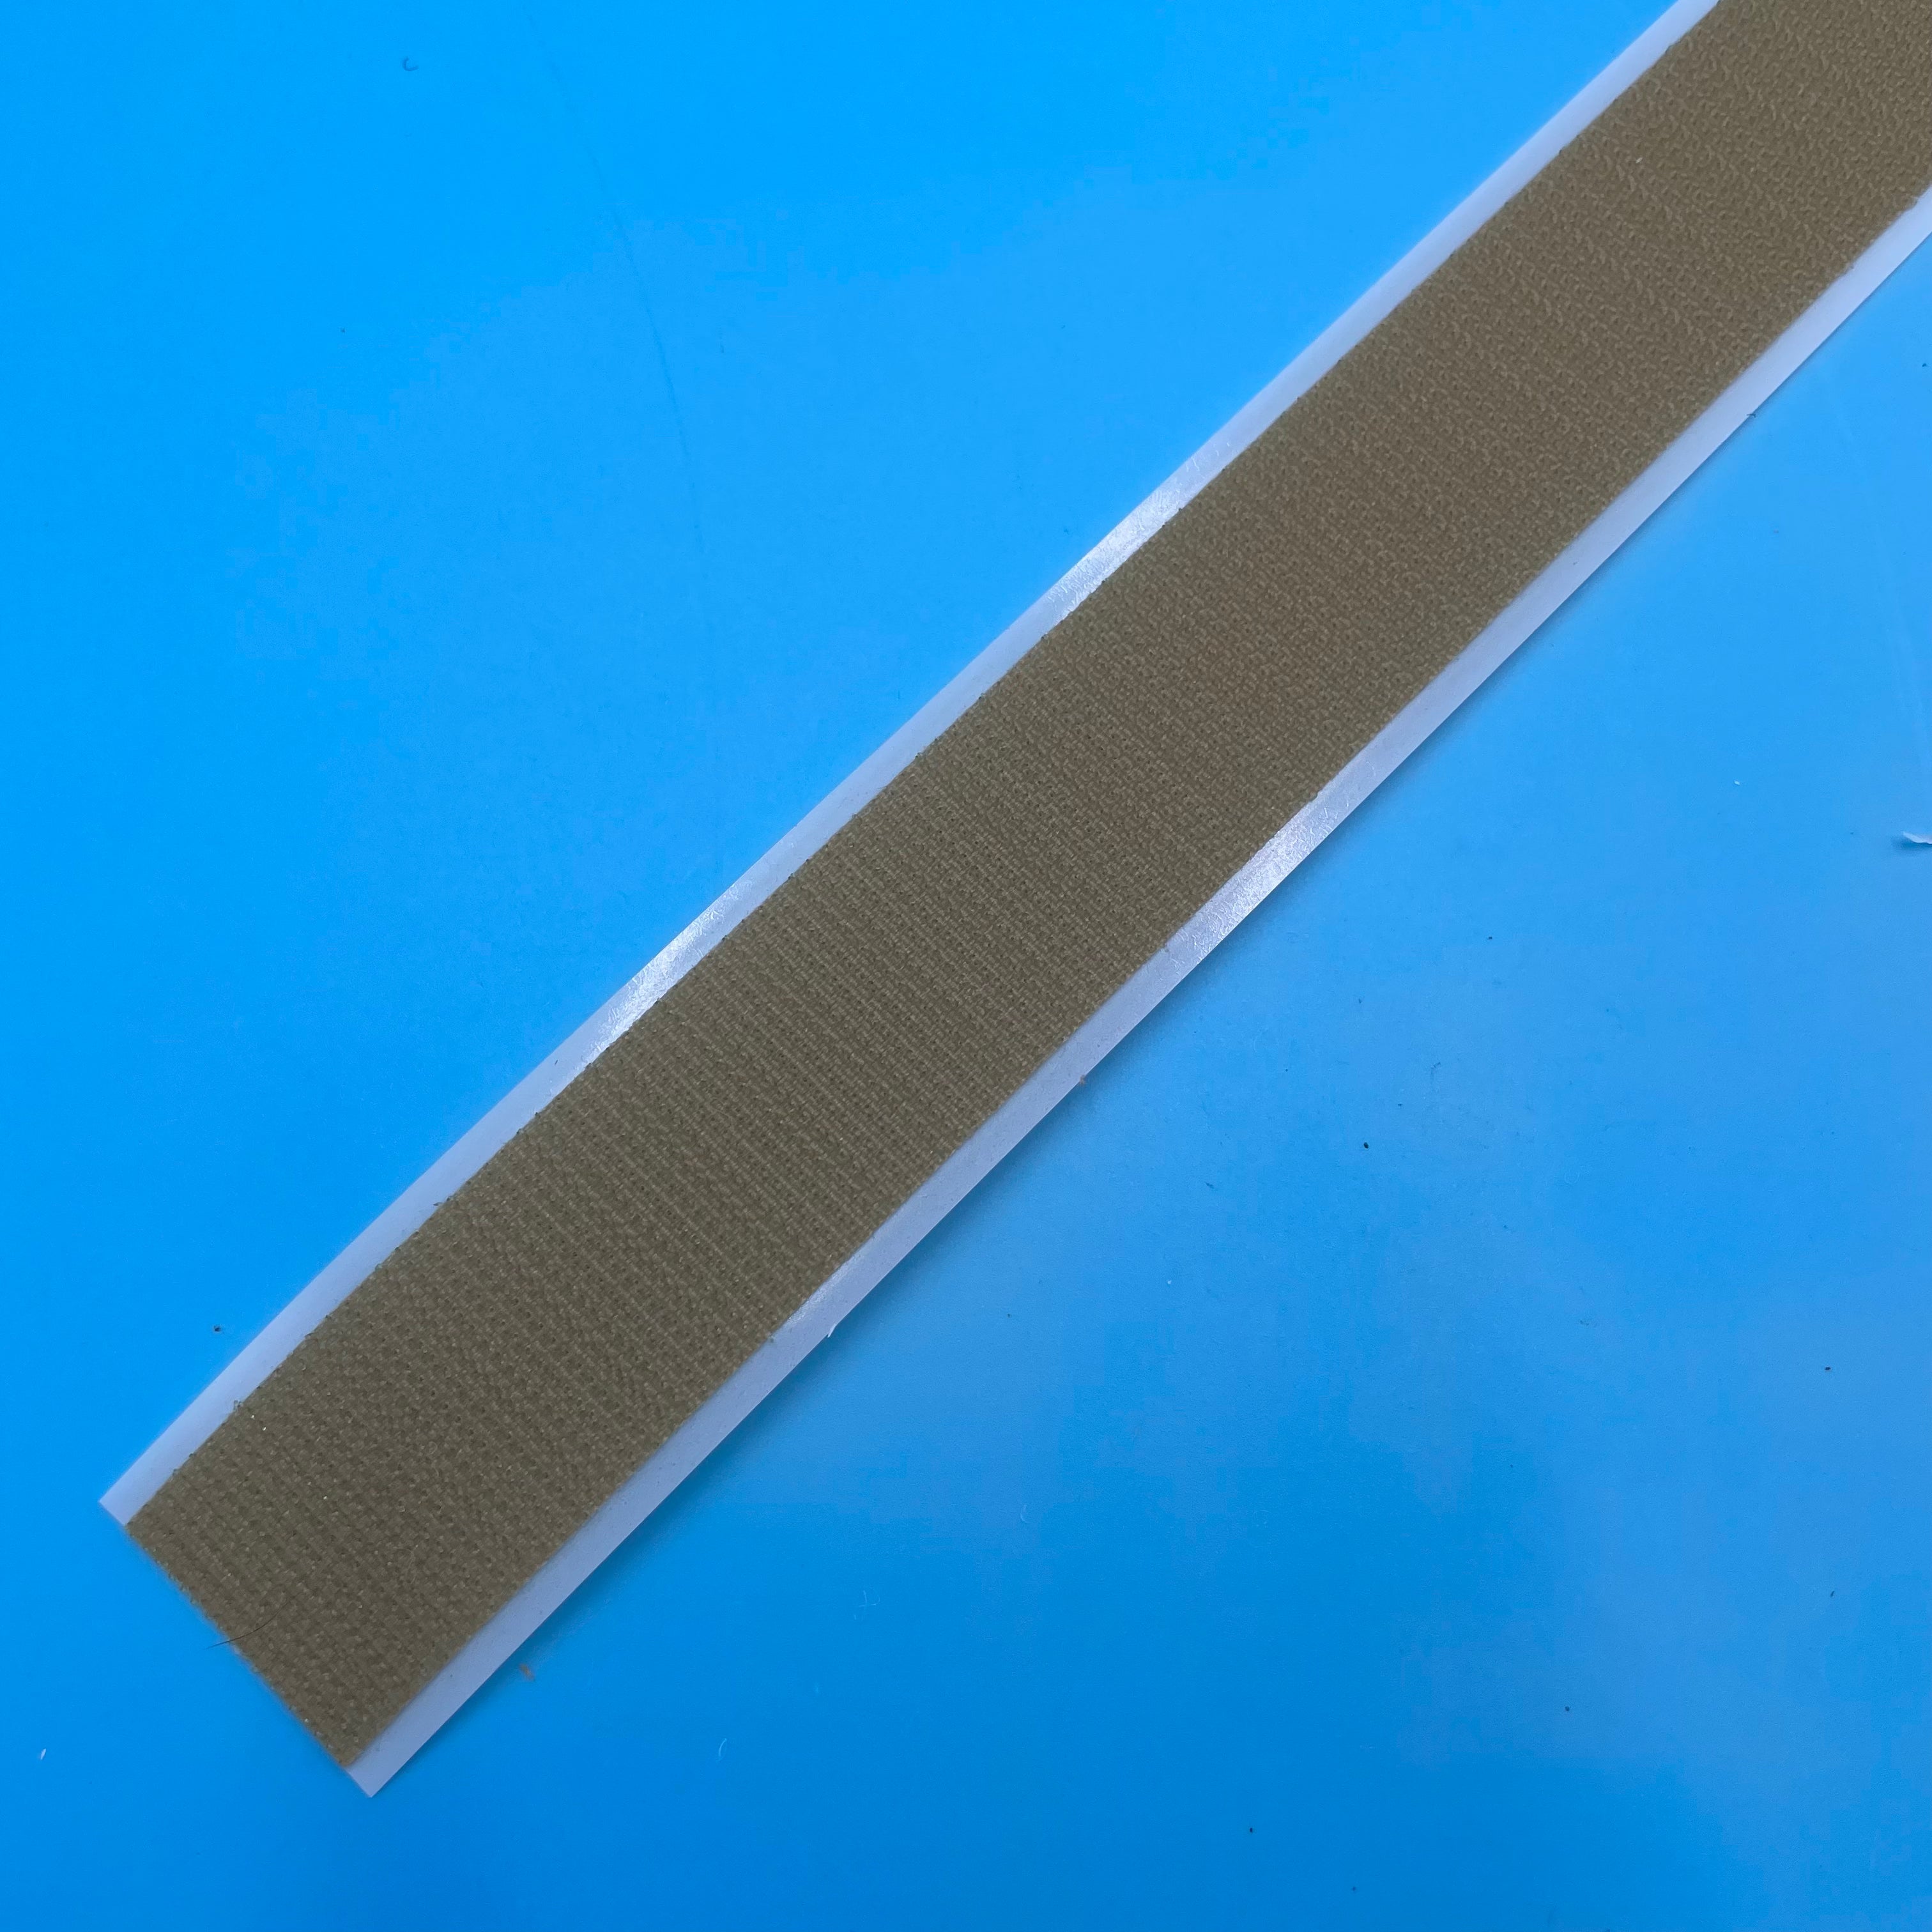 VELCRO® Brand PSA Hook Tape Strips Beige 75’ / 25 Yards